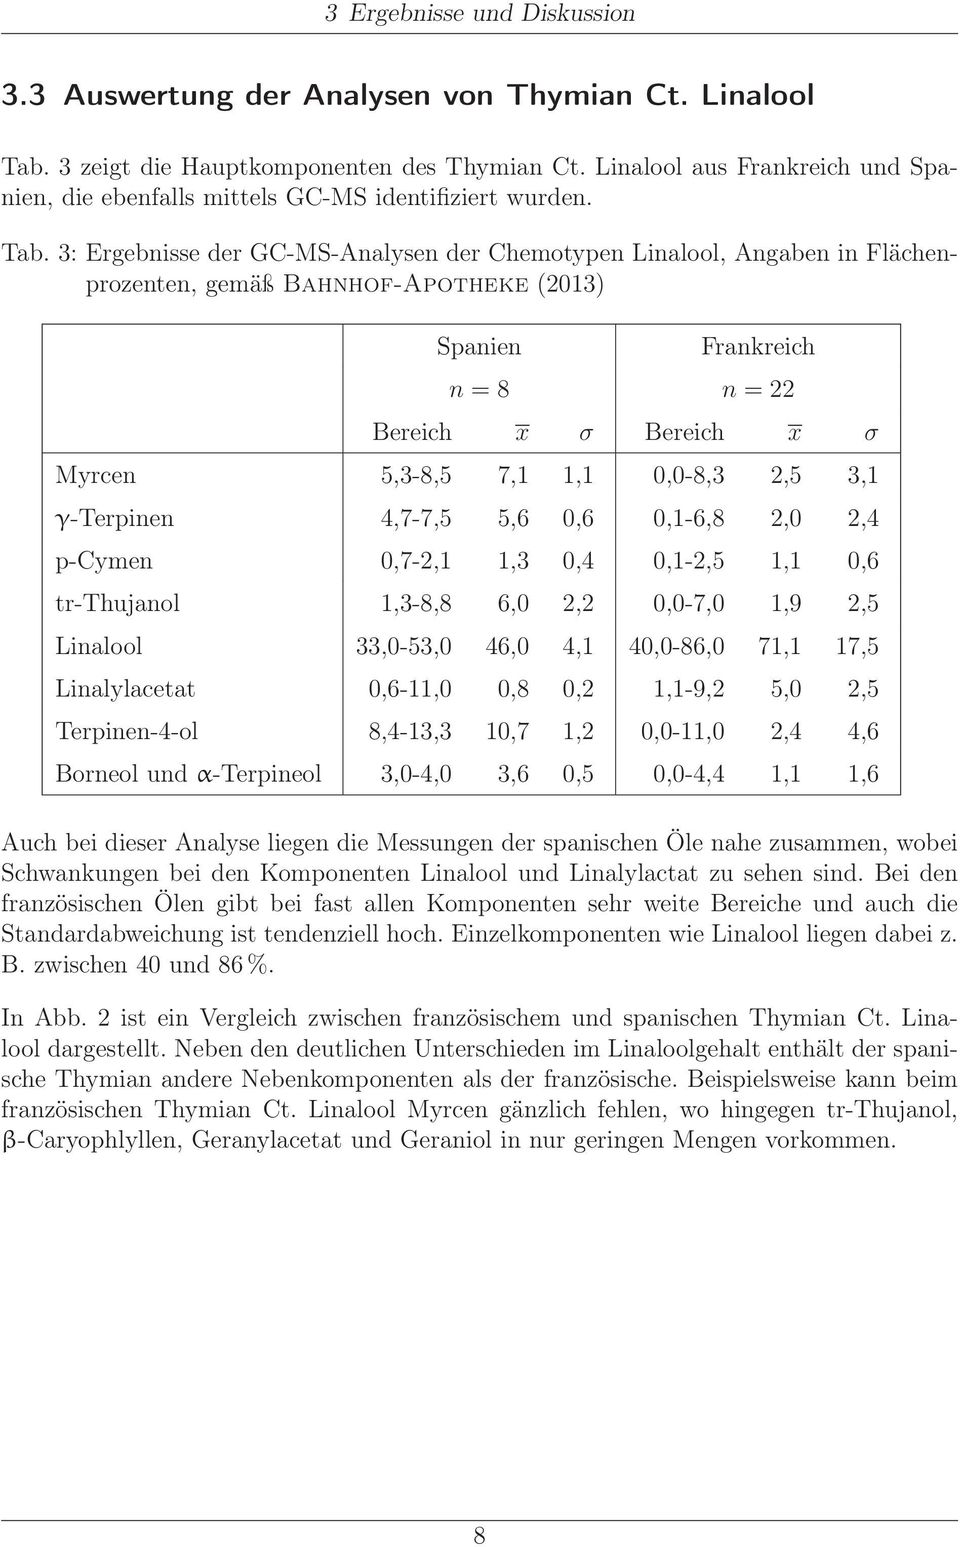 3: Ergebnisse der GC-MS-Analysen der Chemotypen Linalool, Angaben in Flächenprozenten, gemäß Bahnhof-Apotheke (2013) Spanien Frankreich n = 8 n = 22 Bereich x σ Bereich x σ Myrcen 5,3-8,5 7,1 1,1